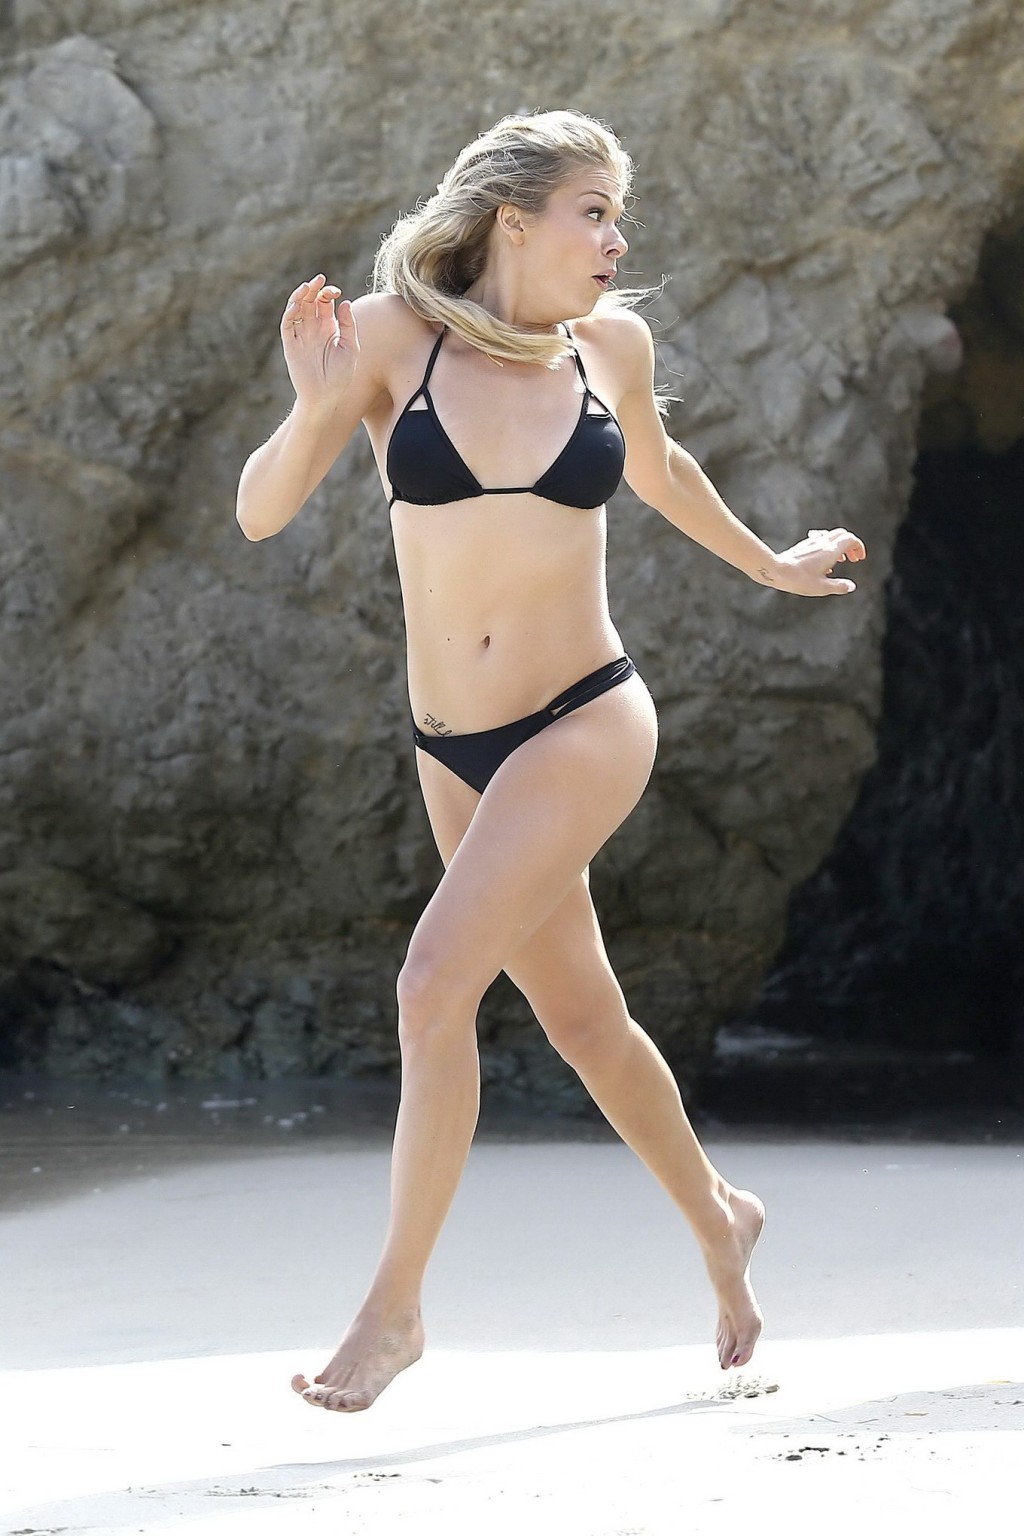 Leann rimes portant un bikini noir lors du photoshoot à la plage de malibu
 #75192669